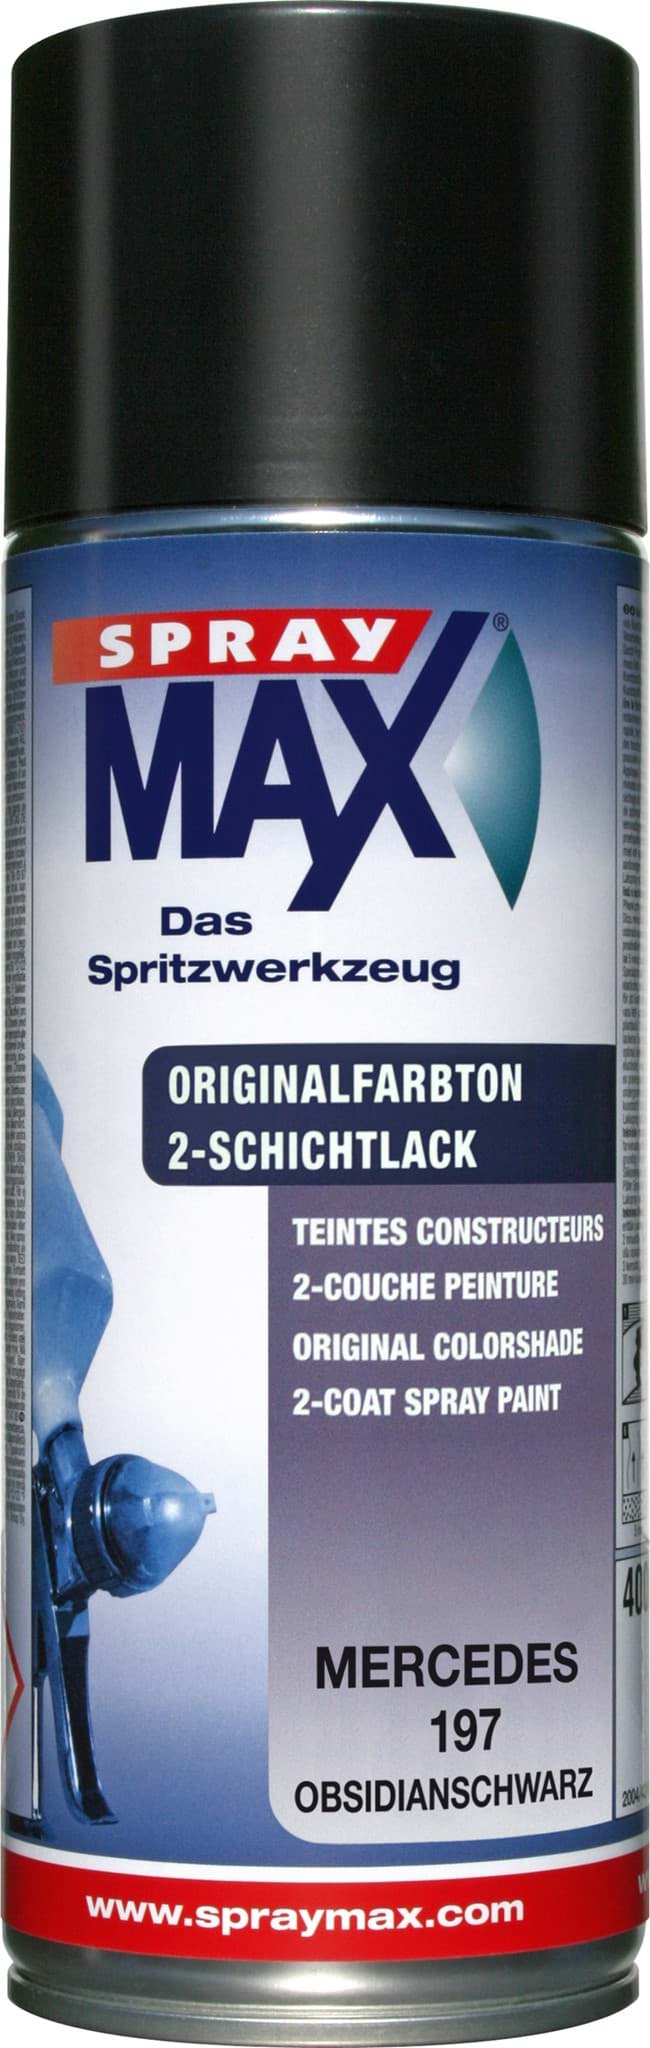 Afbeelding van SprayMax Originalfarbton für Mercedes 197 obsidianschwarz